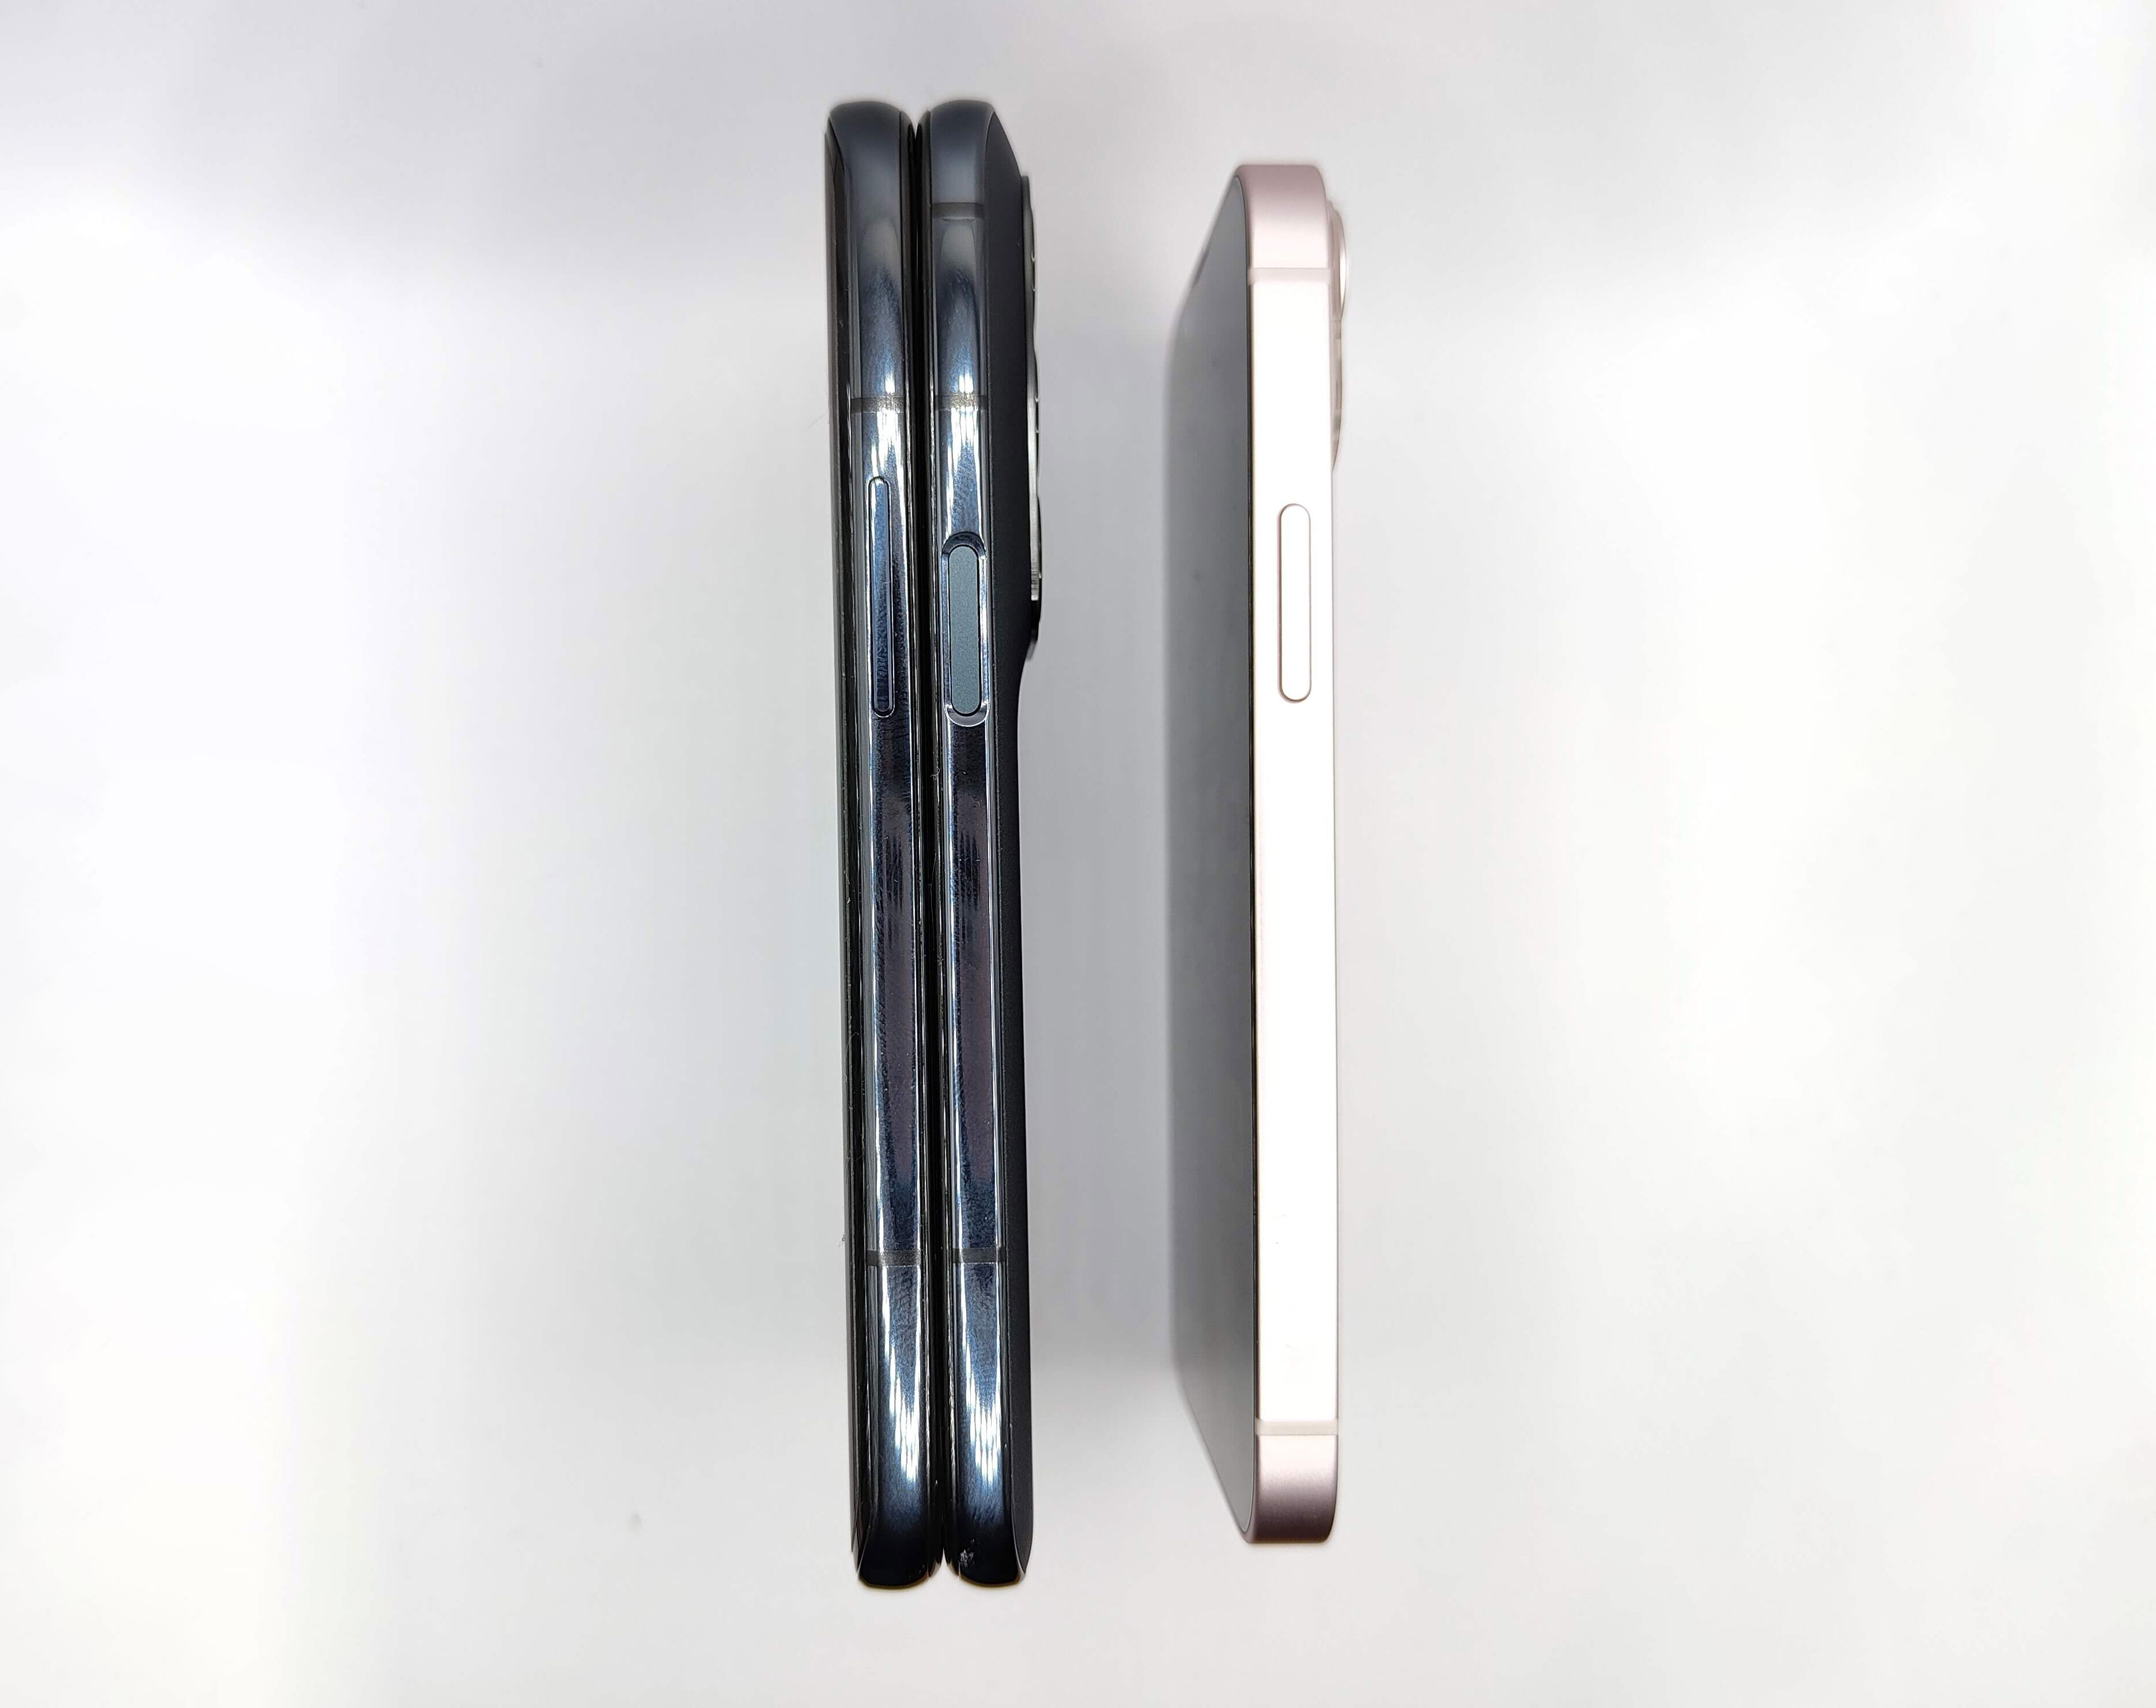 Grössen Vergleich mit iPhone 13 Mini